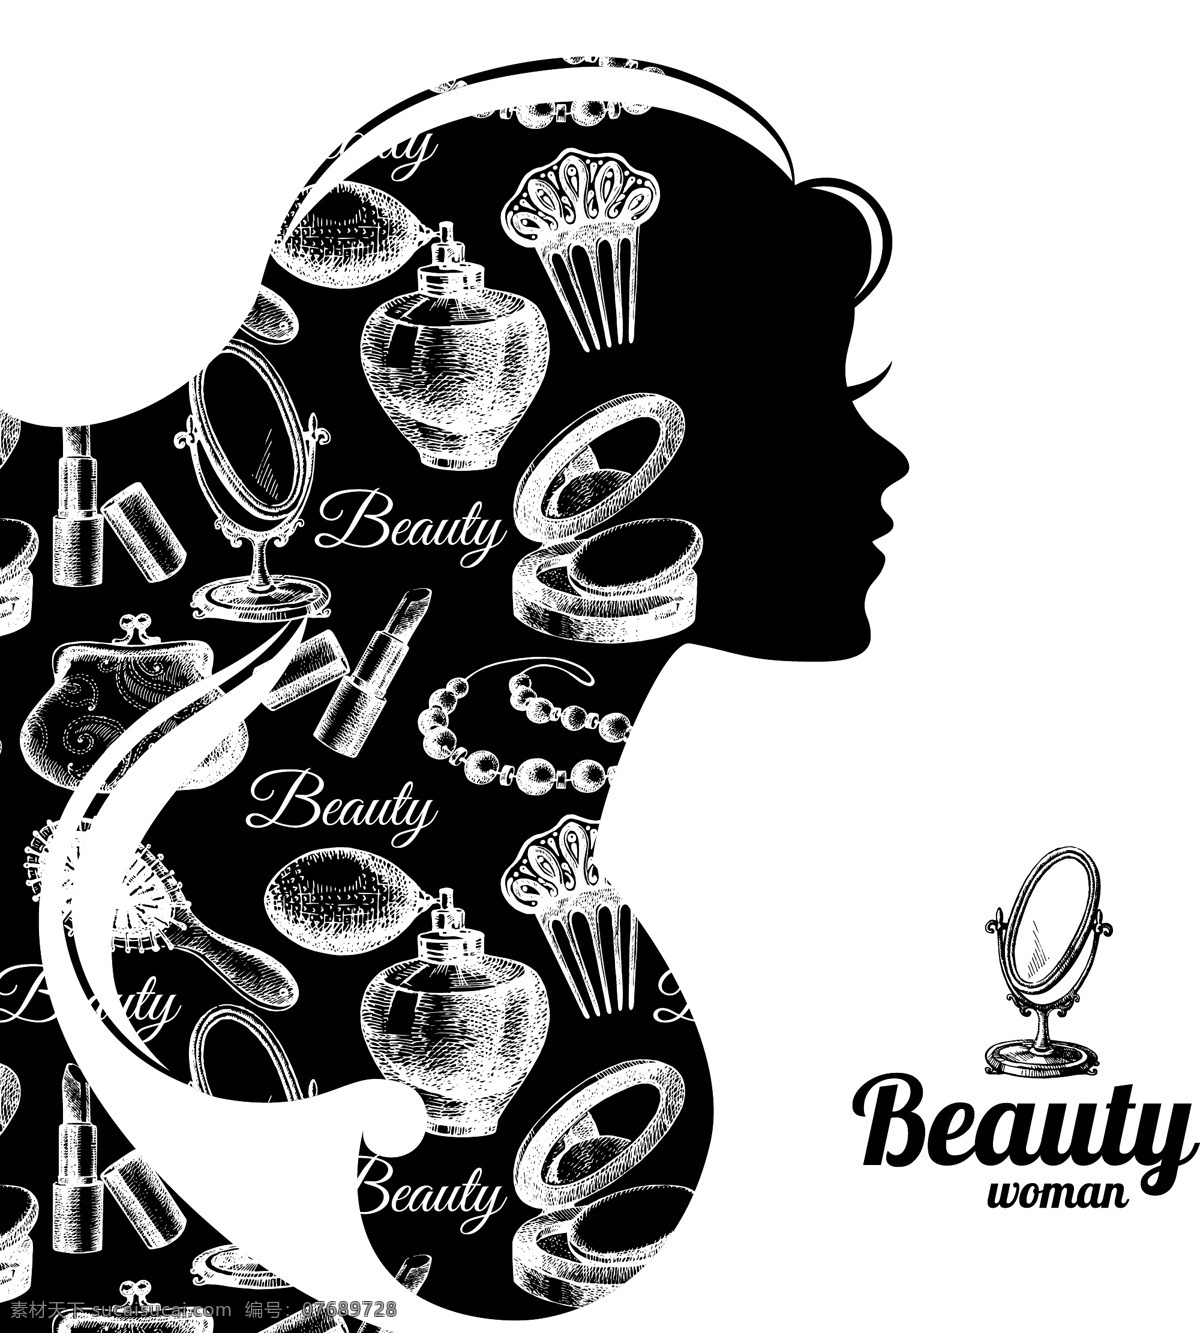 侧面 插画 创意 化妆品 女性 人物 时尚 香水 女性时尚